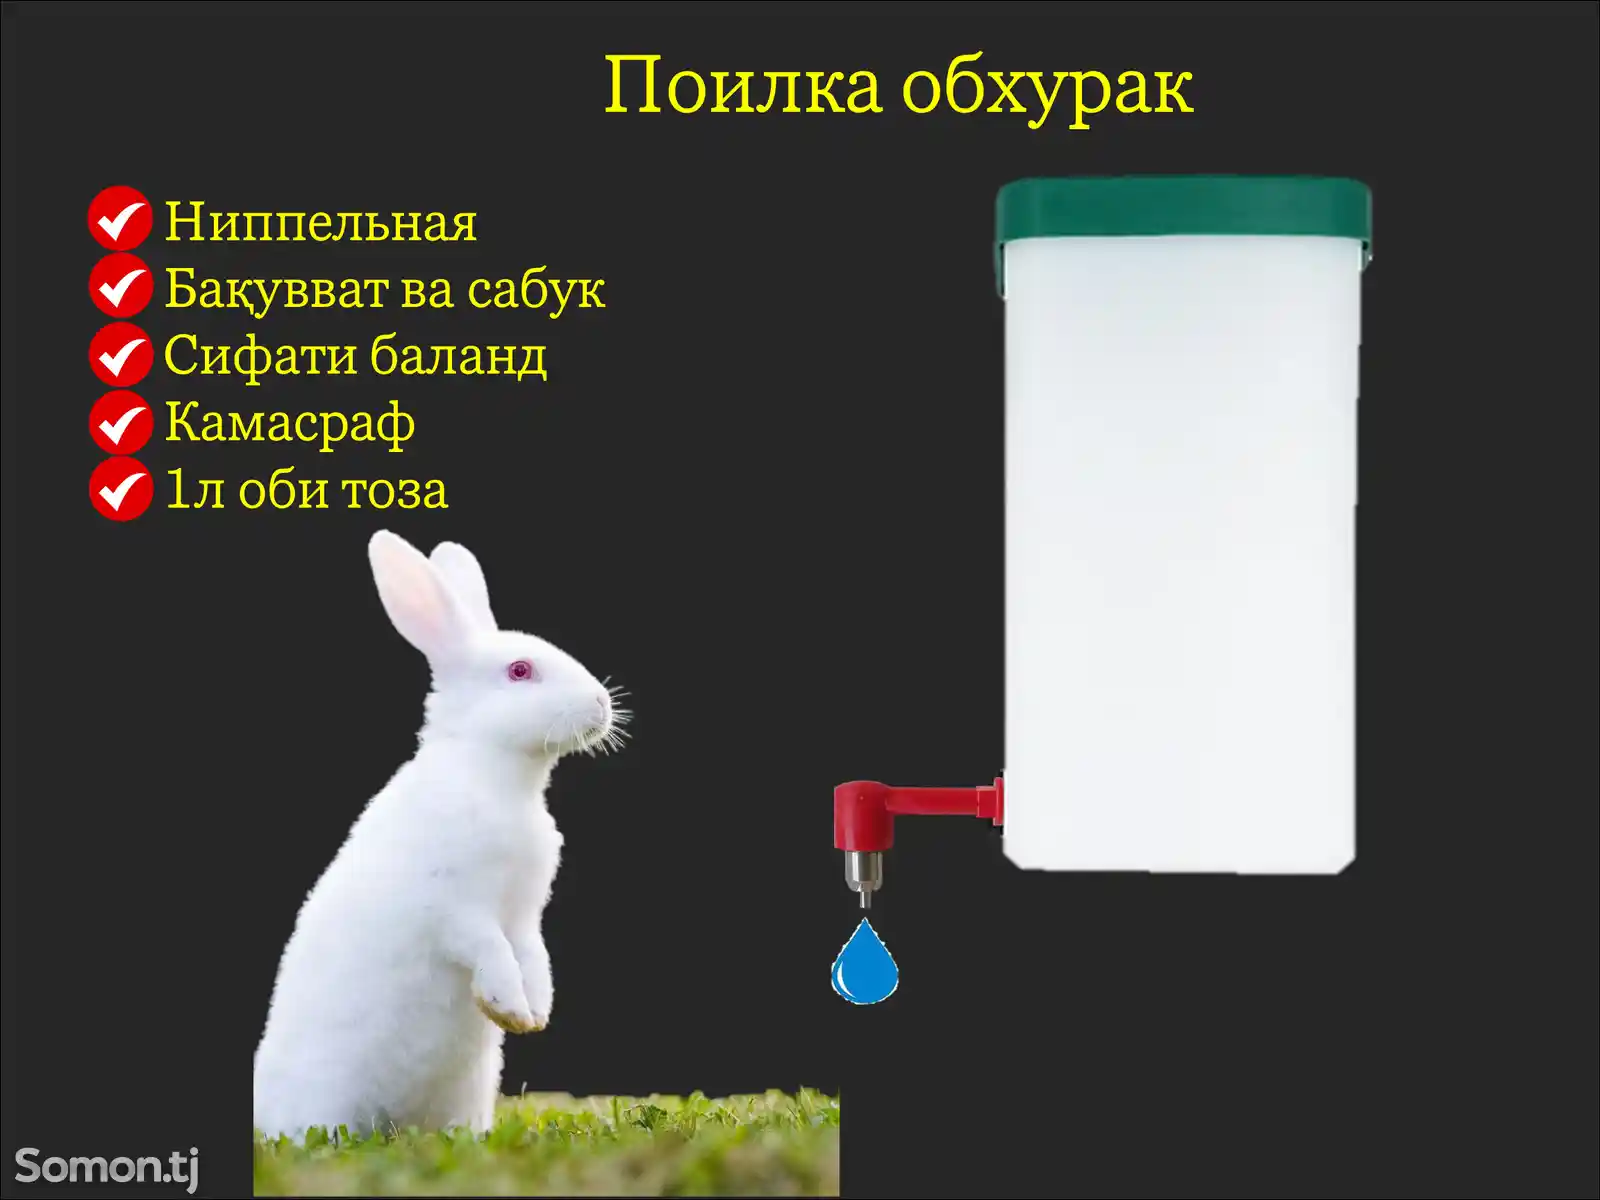 Обхурак/Поилка для кроликов-1